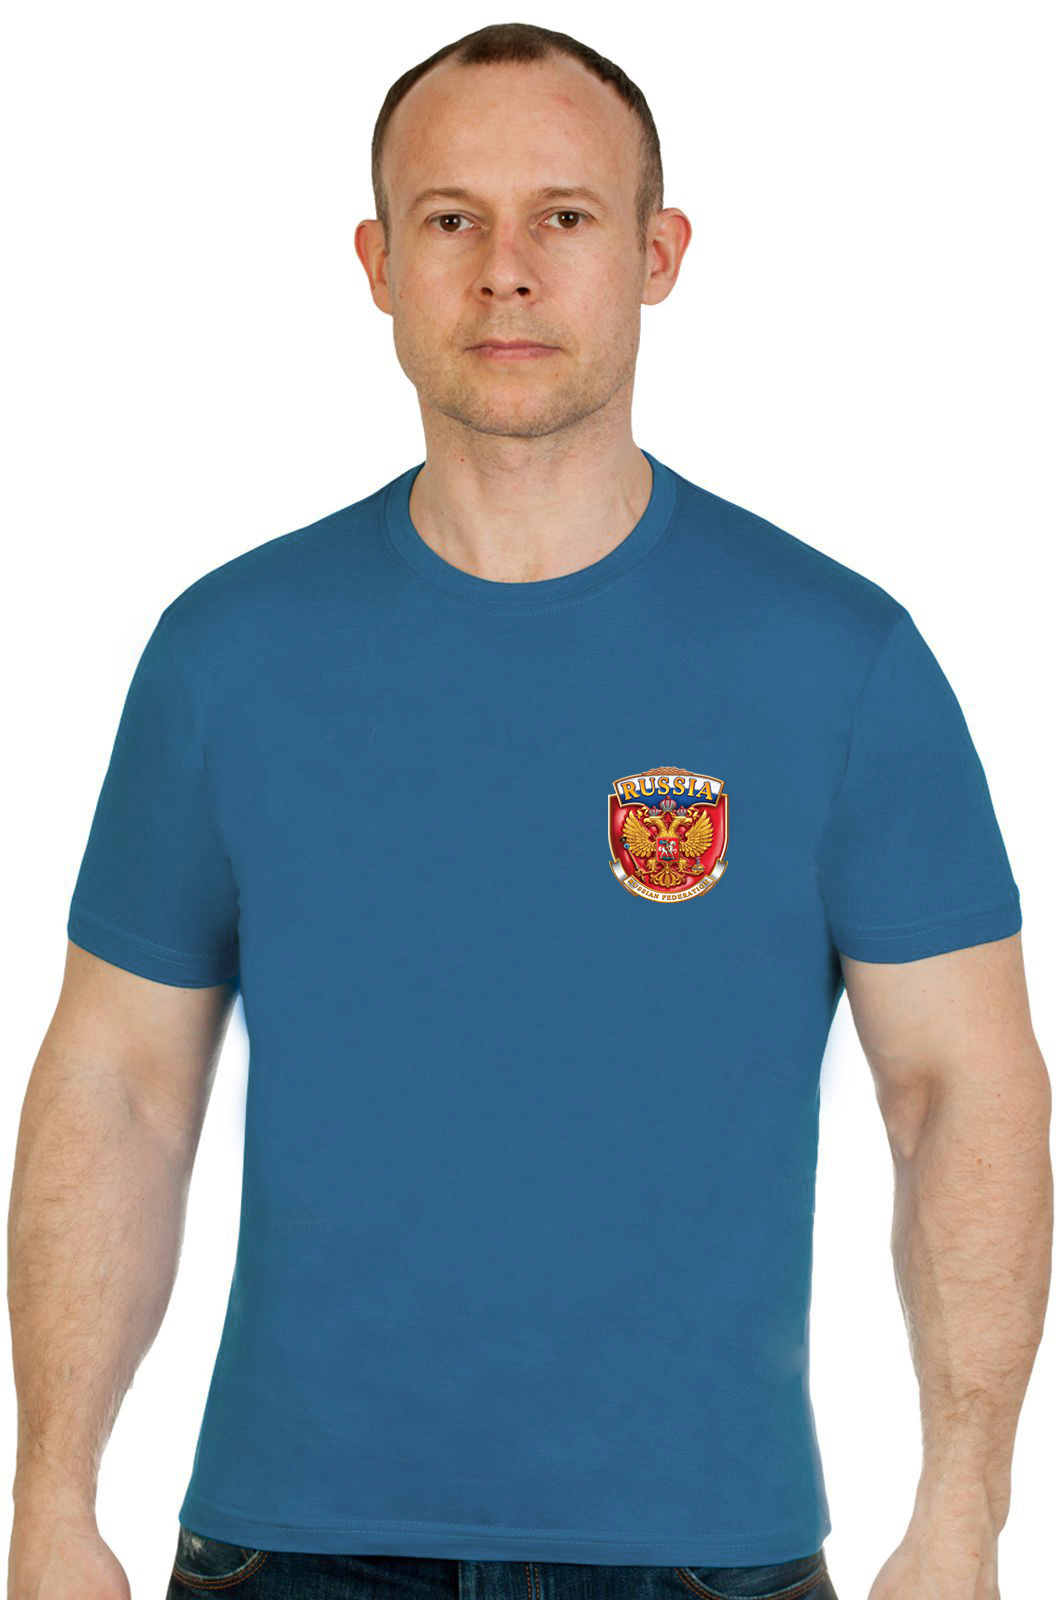 Стильная футболка с эмблемой RUSSIA. 